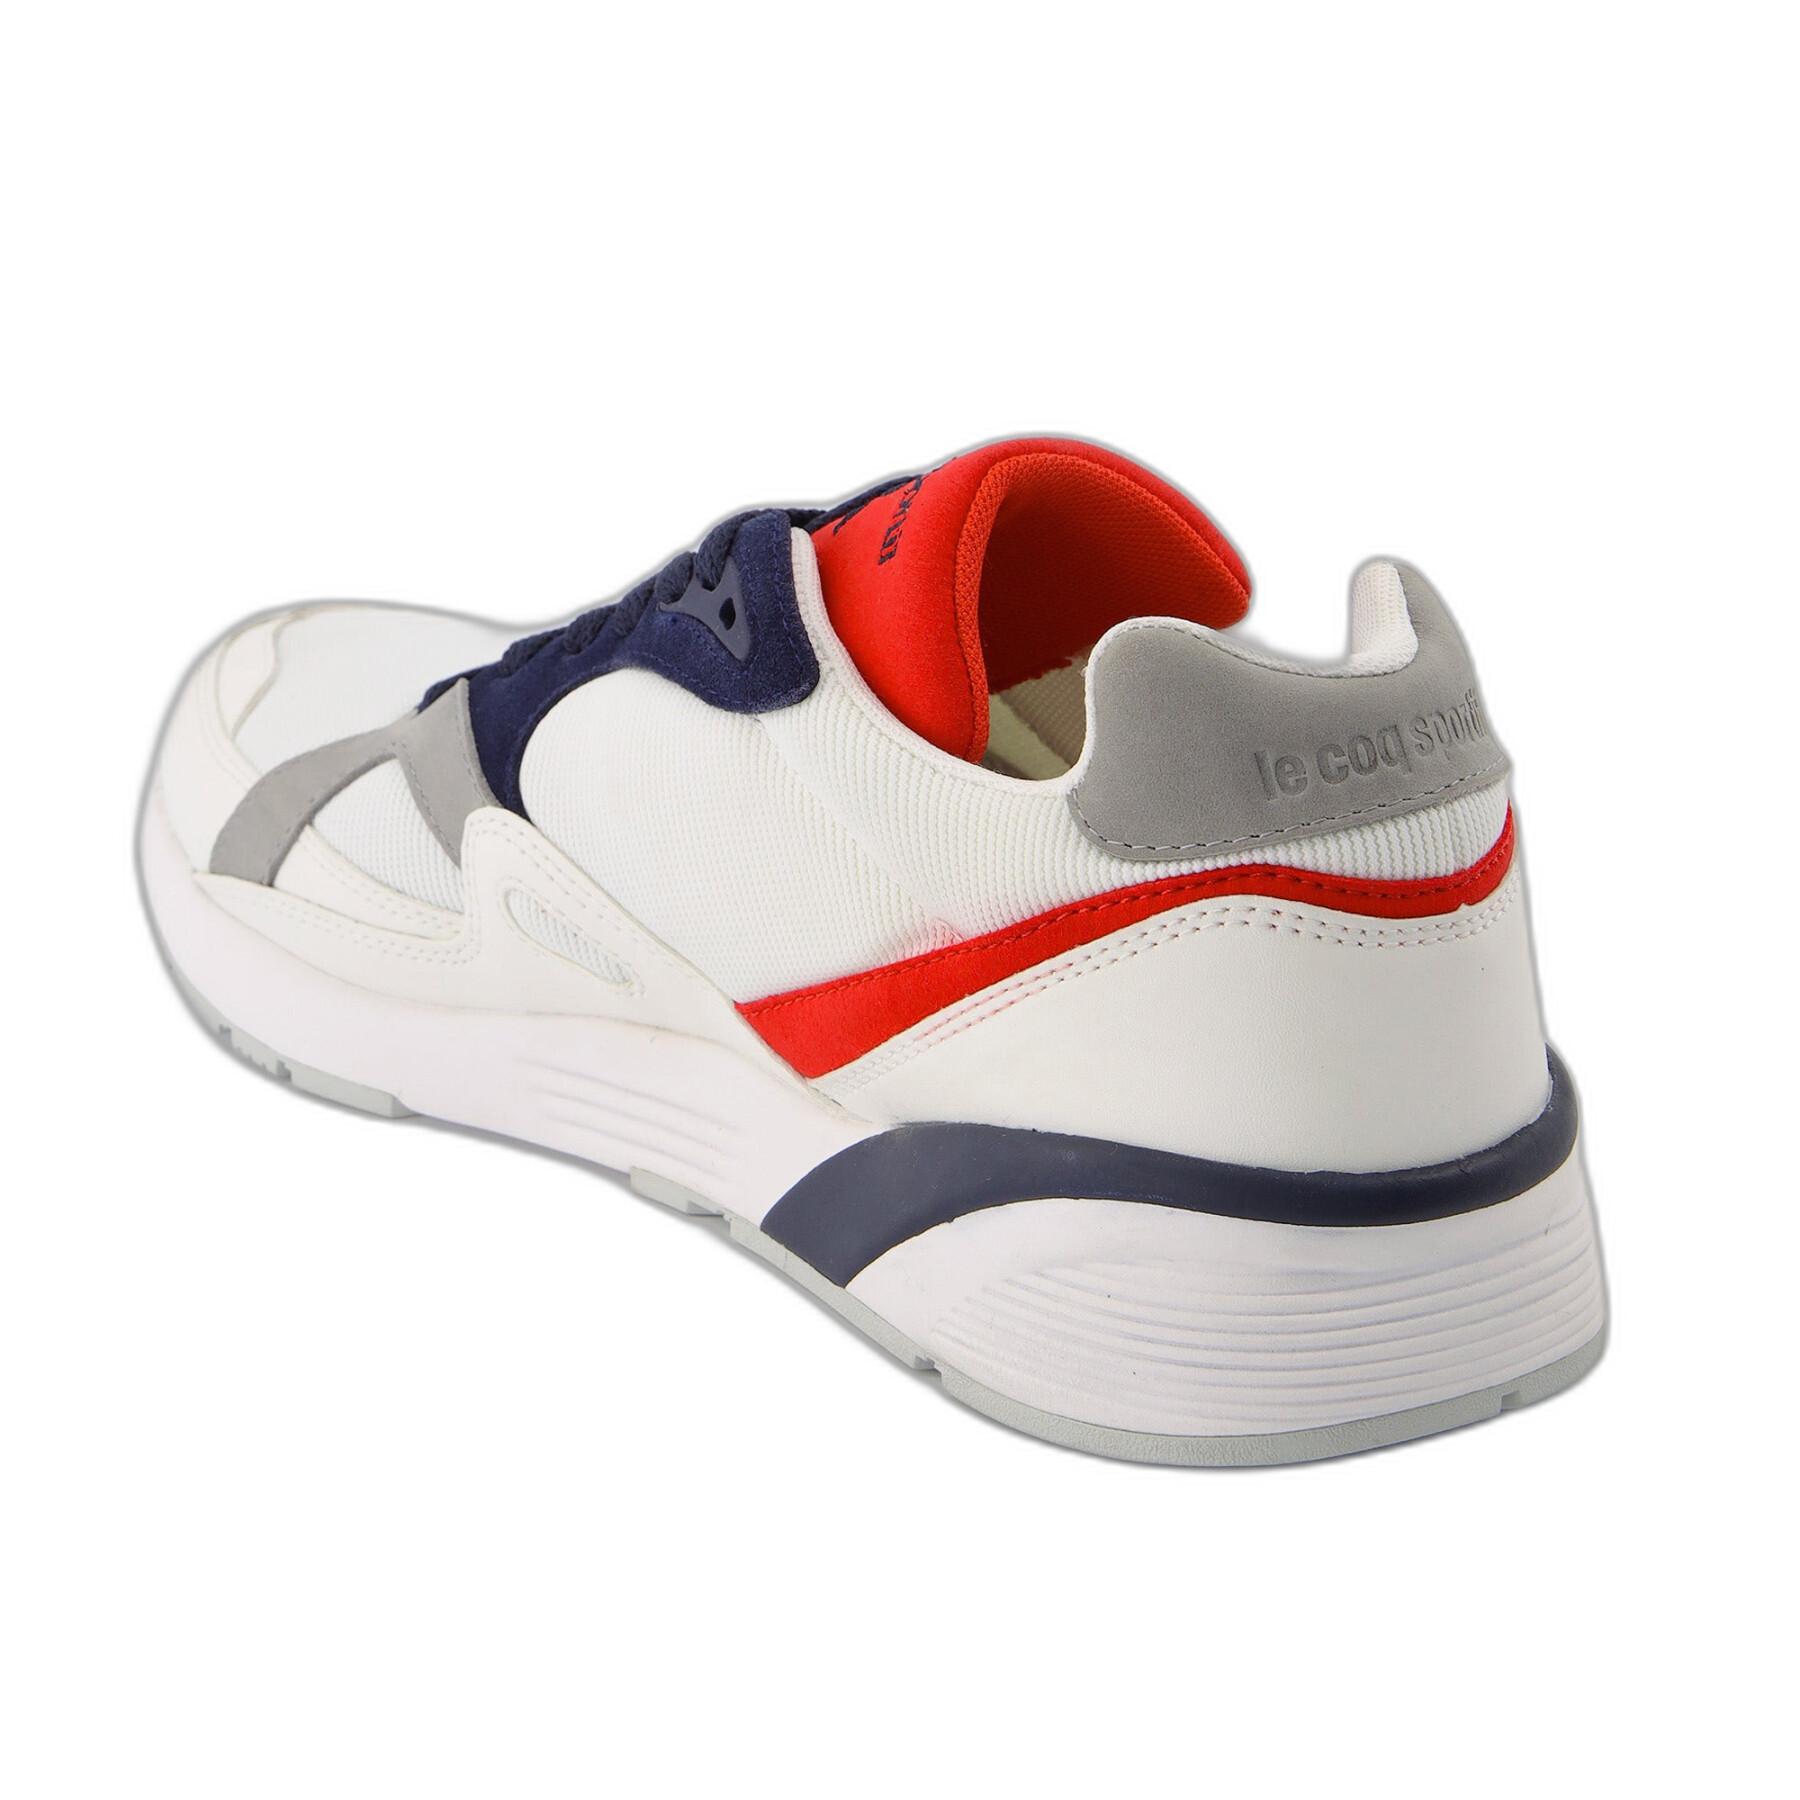 Sneakers Le Coq Sportif Lcs R850 Tricolore